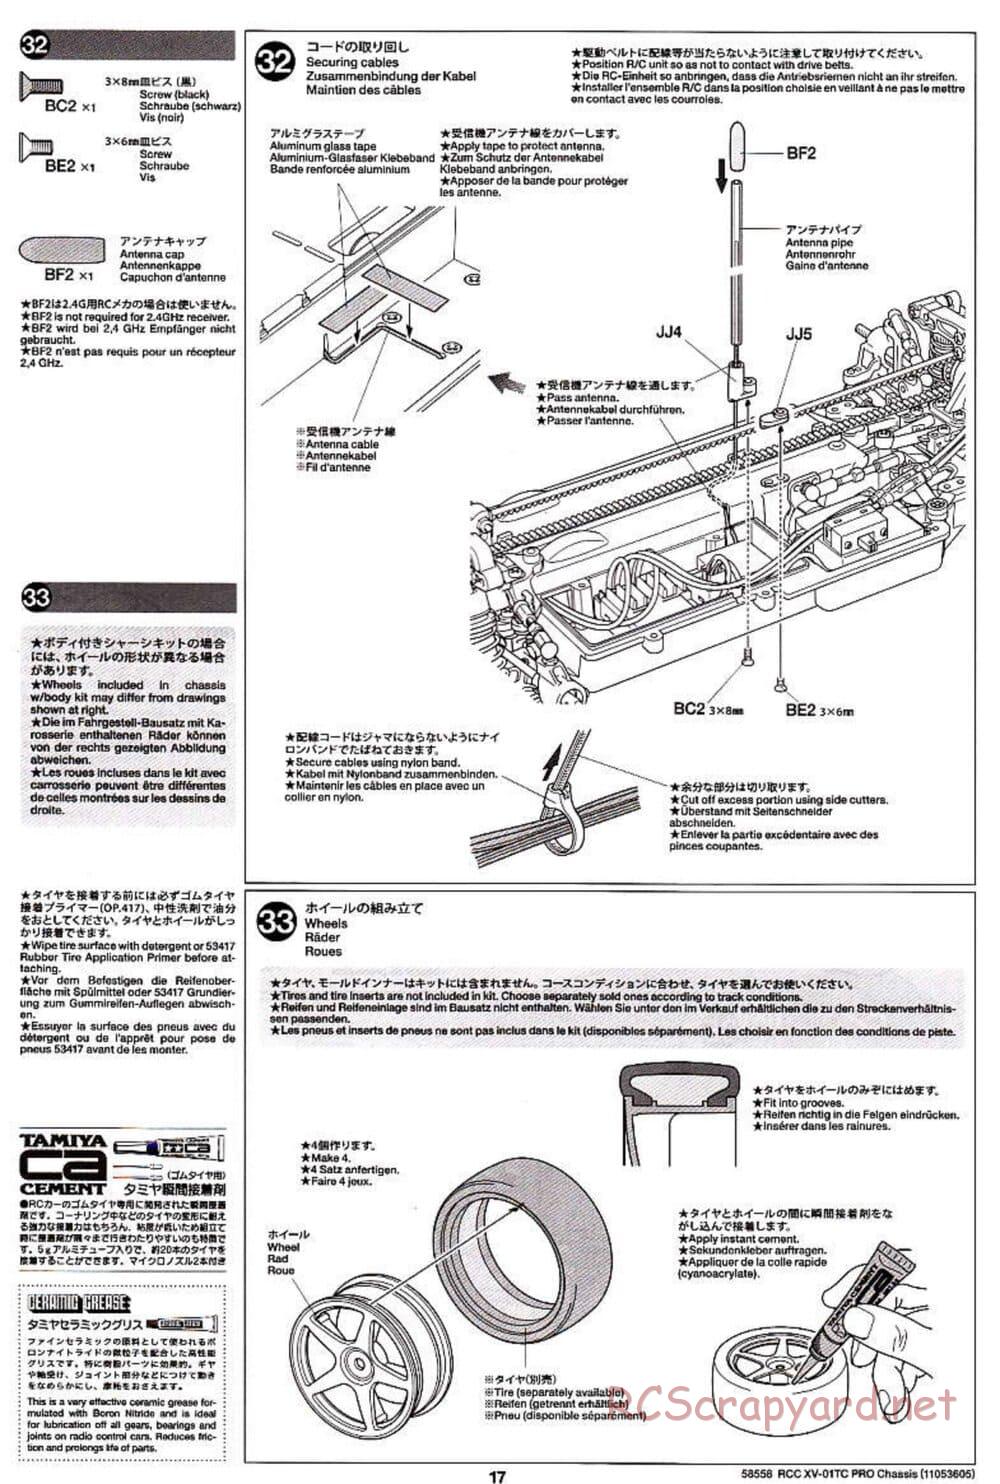 Tamiya - XV-01TC Chassis - Manual - Page 17